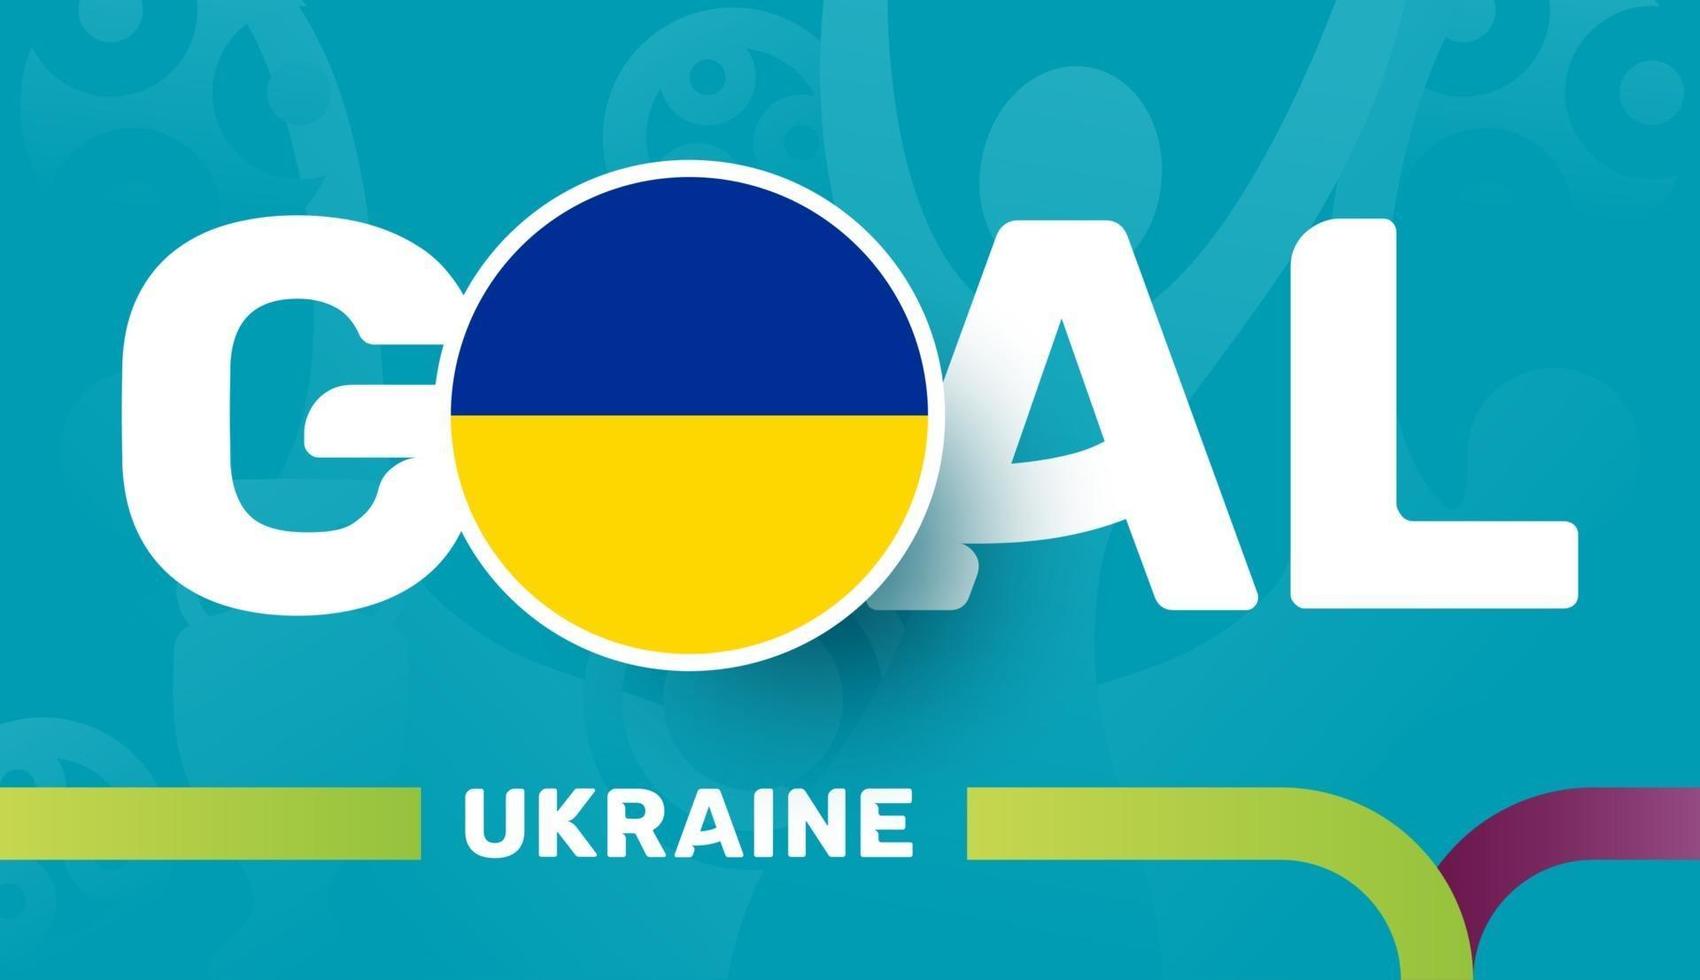 oekraïne vlag en slogan doel op europese 2020 voetbal achtergrond. voetbaltoernooi vectorillustratie vector